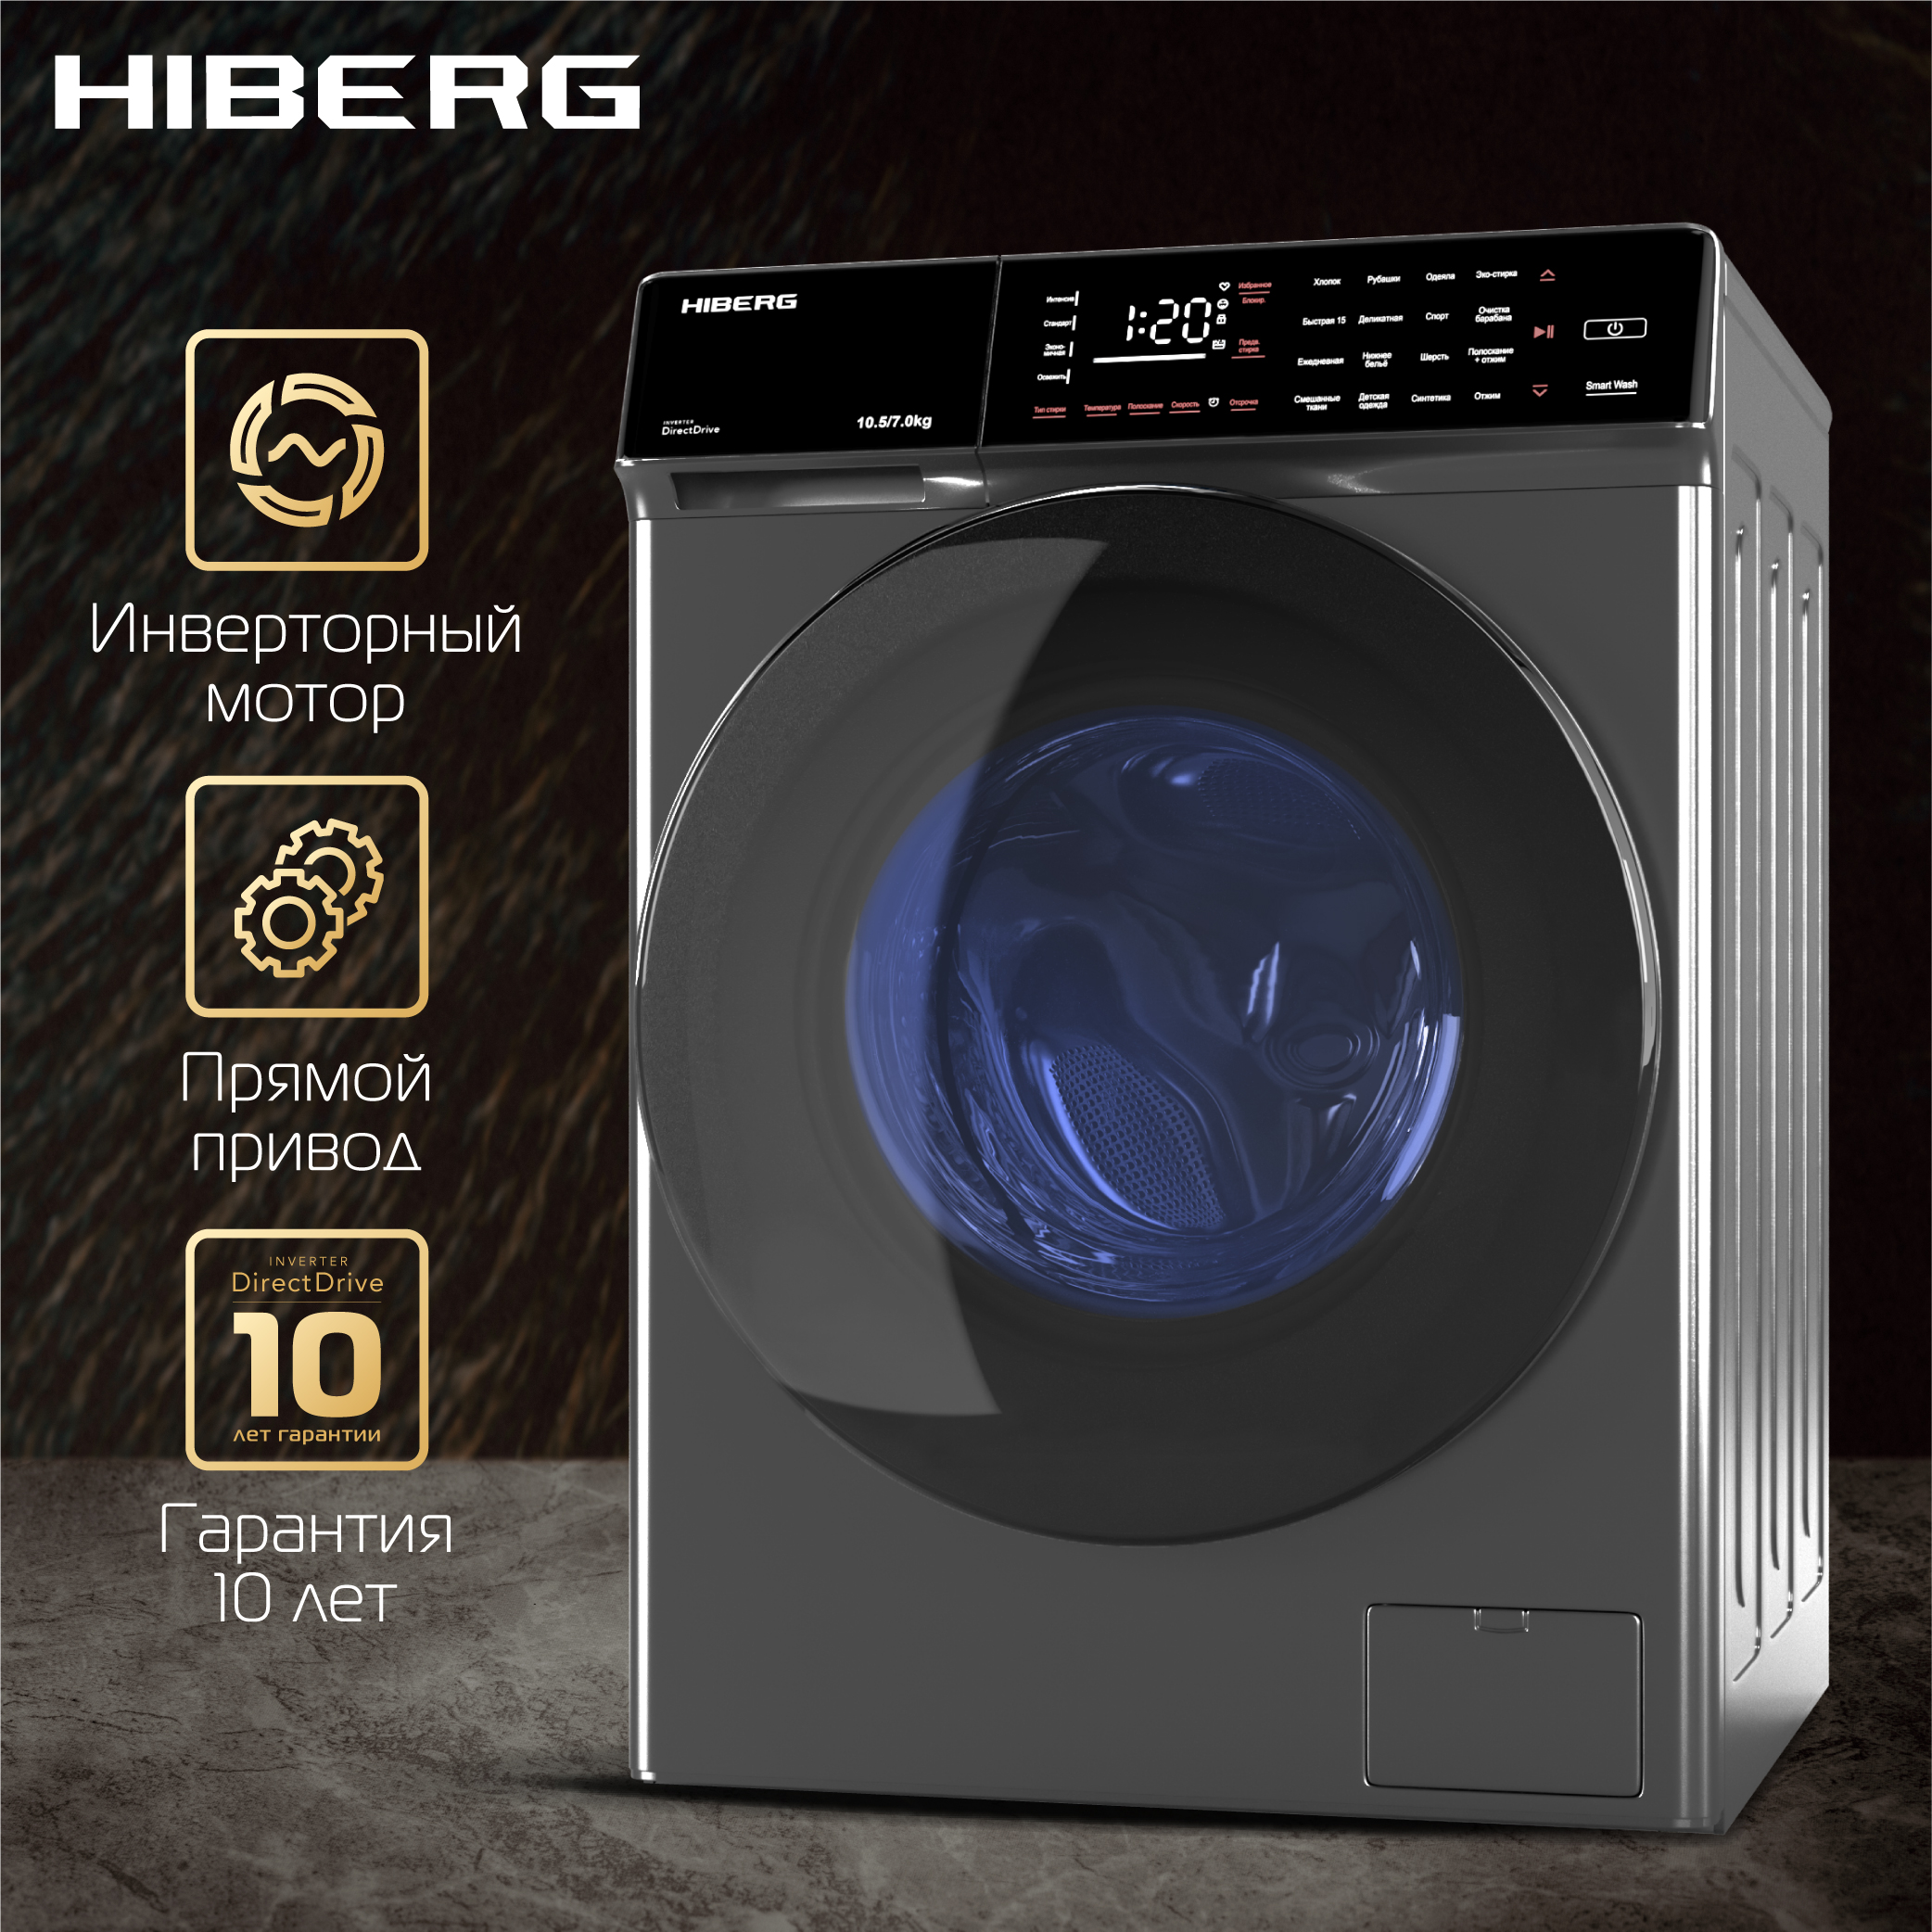 Стиральная машина Hiberg i-DDQ9 - 10714 Sd серебристый стиральная машина hiberg i ddq9 712 ym